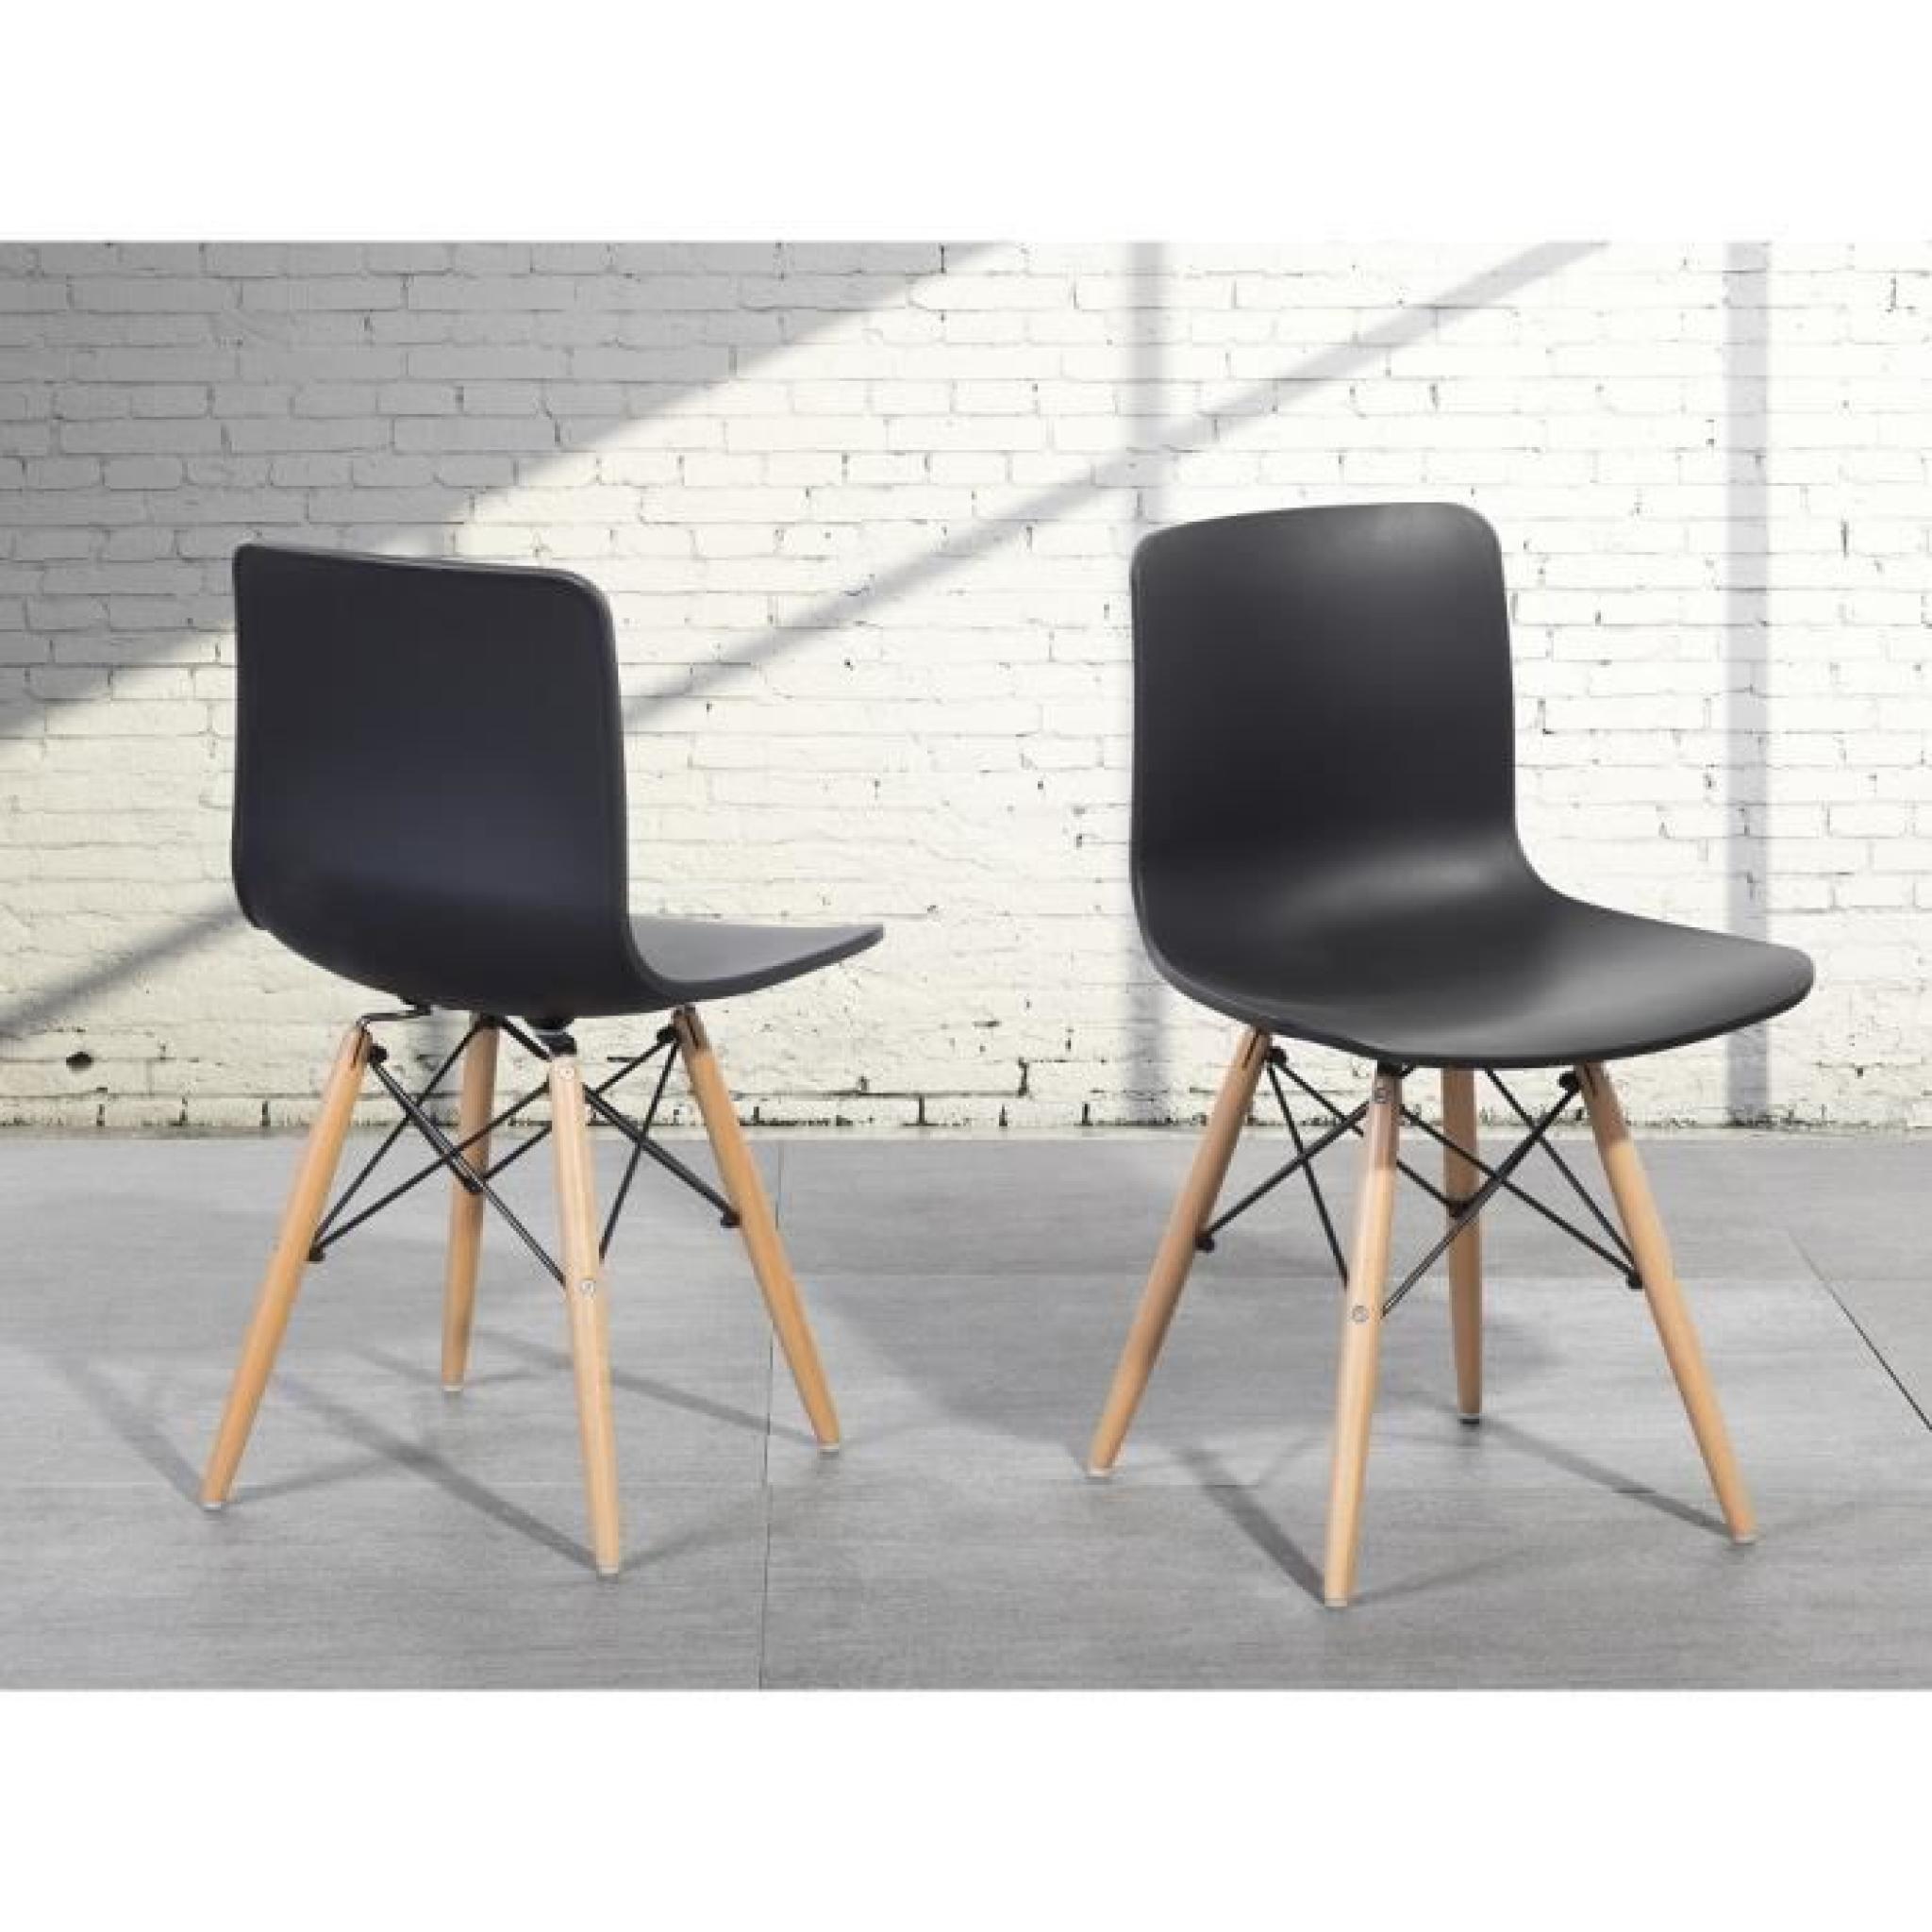 Chaise design - siège en plastique noir - Soho